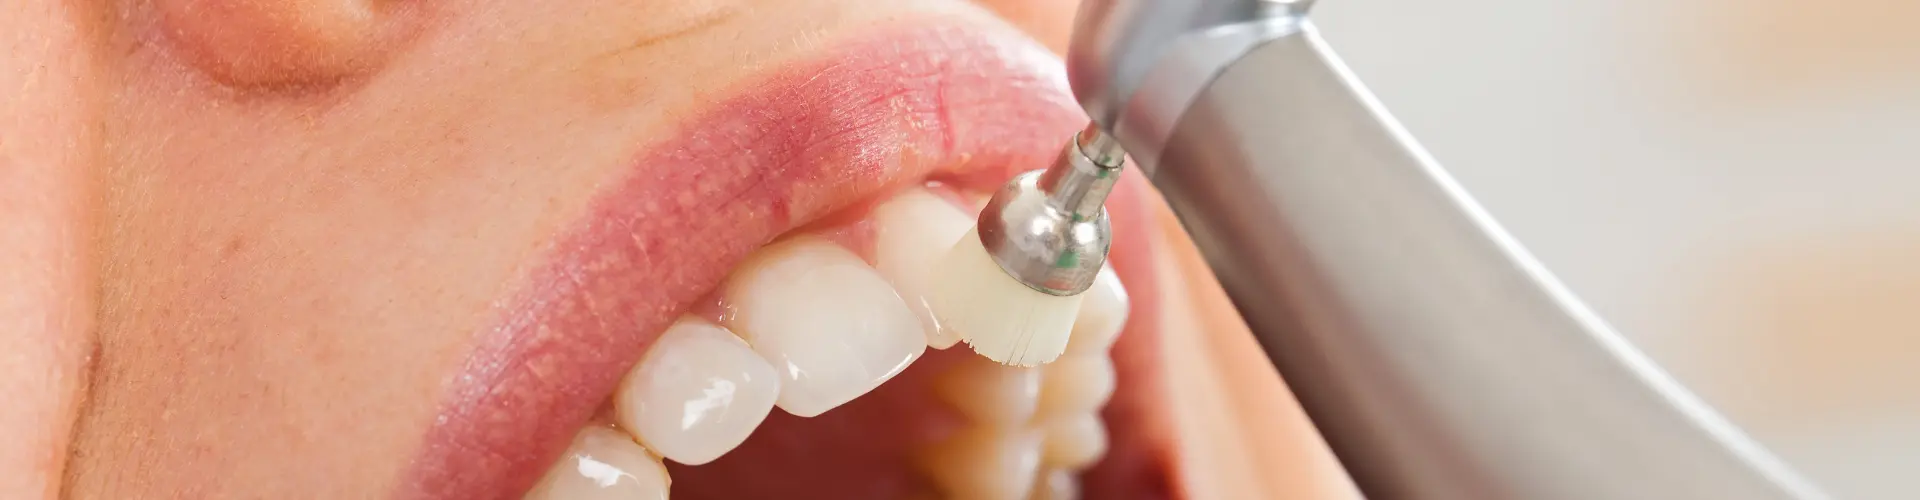 teeth cleaning tool being used on woman's teeth